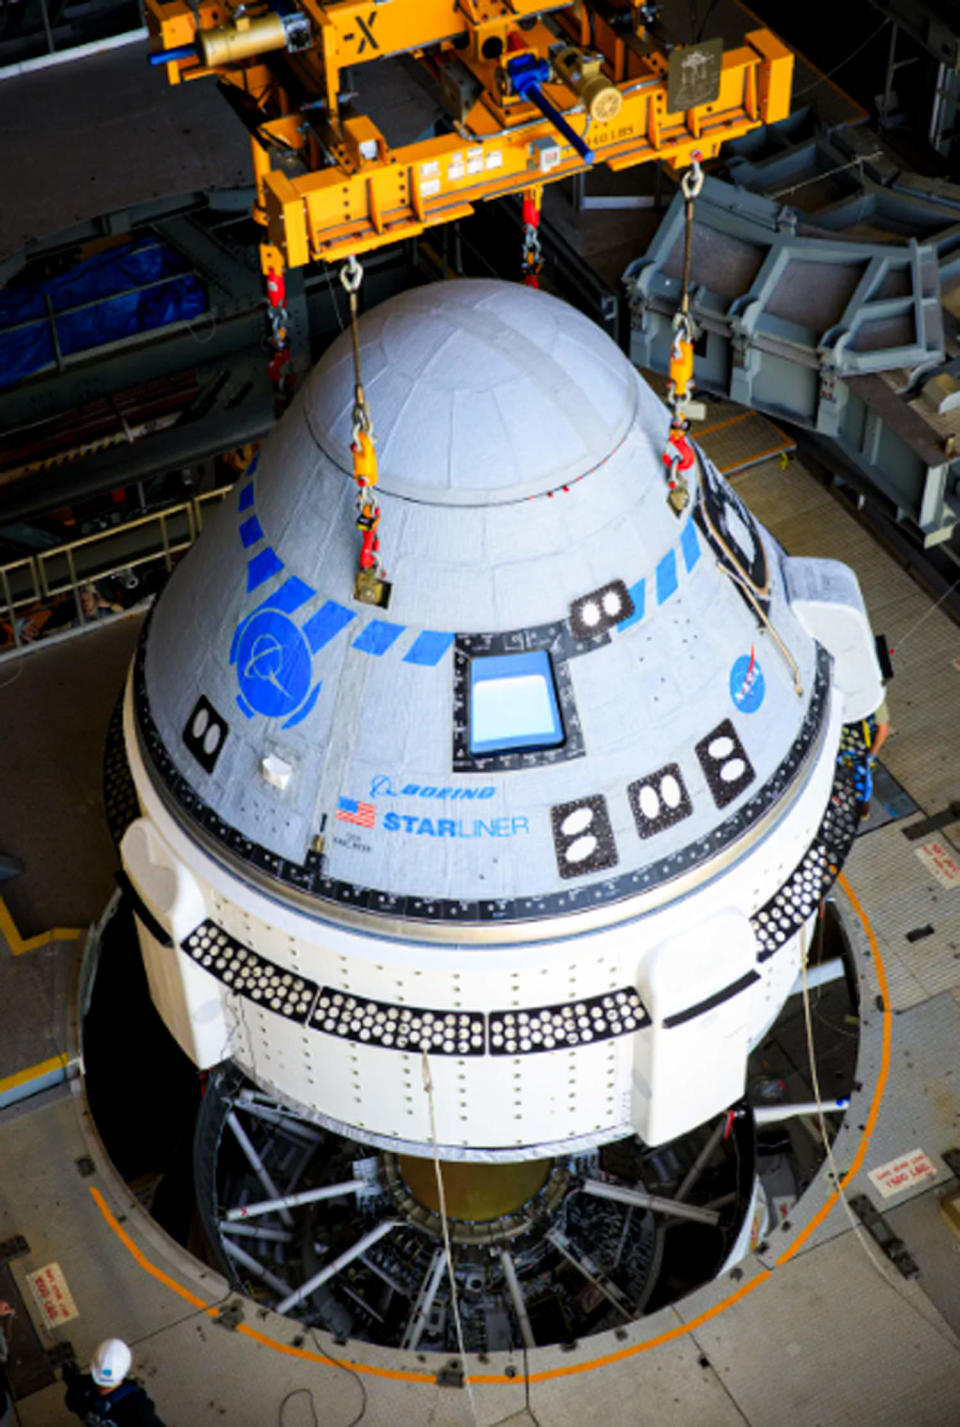 The Boeing CST-100 Starliner spacecraft (Frank Michaux/NASA)